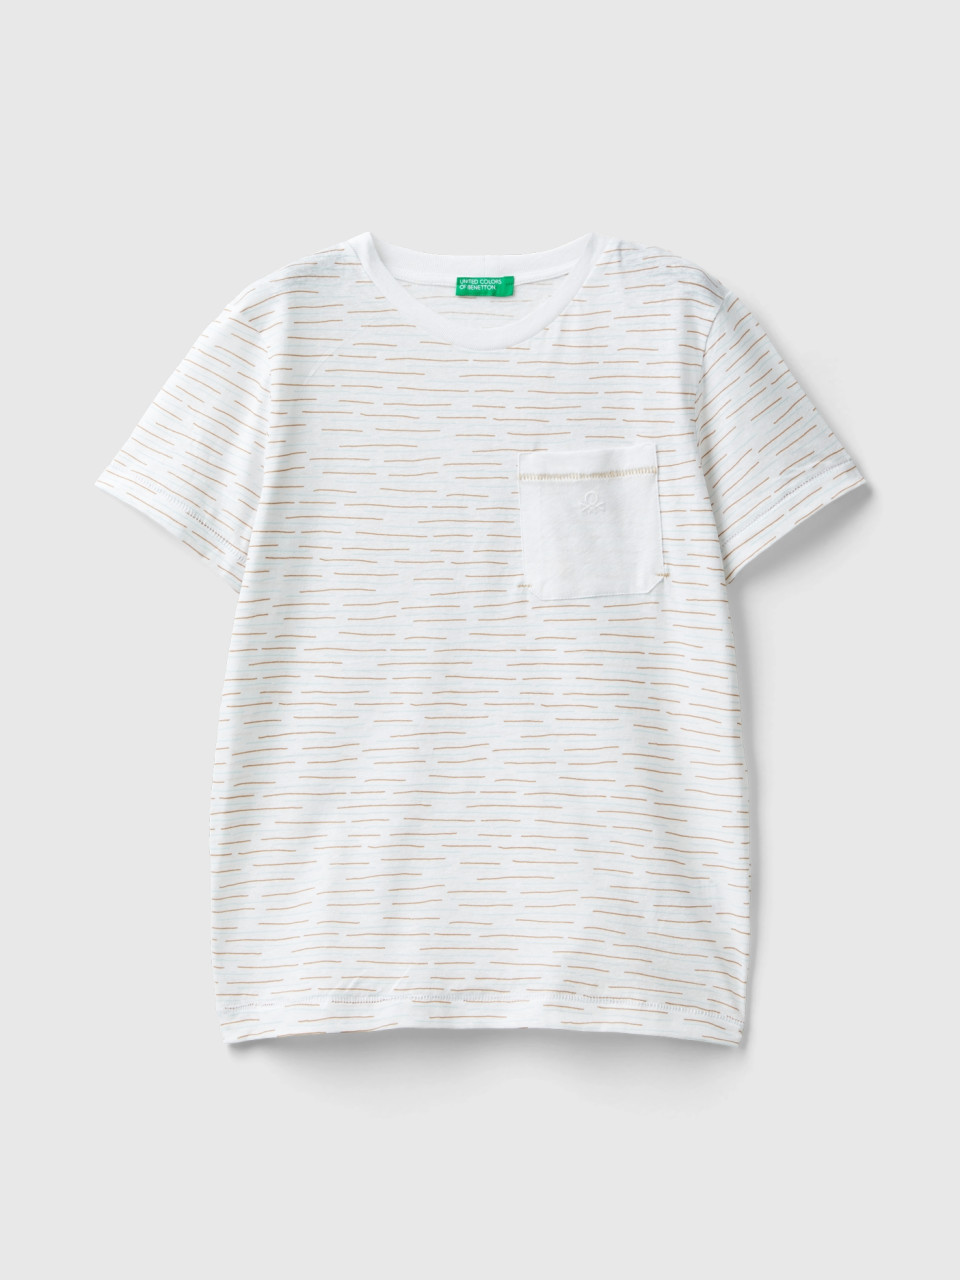 Benetton, Striped T-shirt In Linen Blend, White, Kids